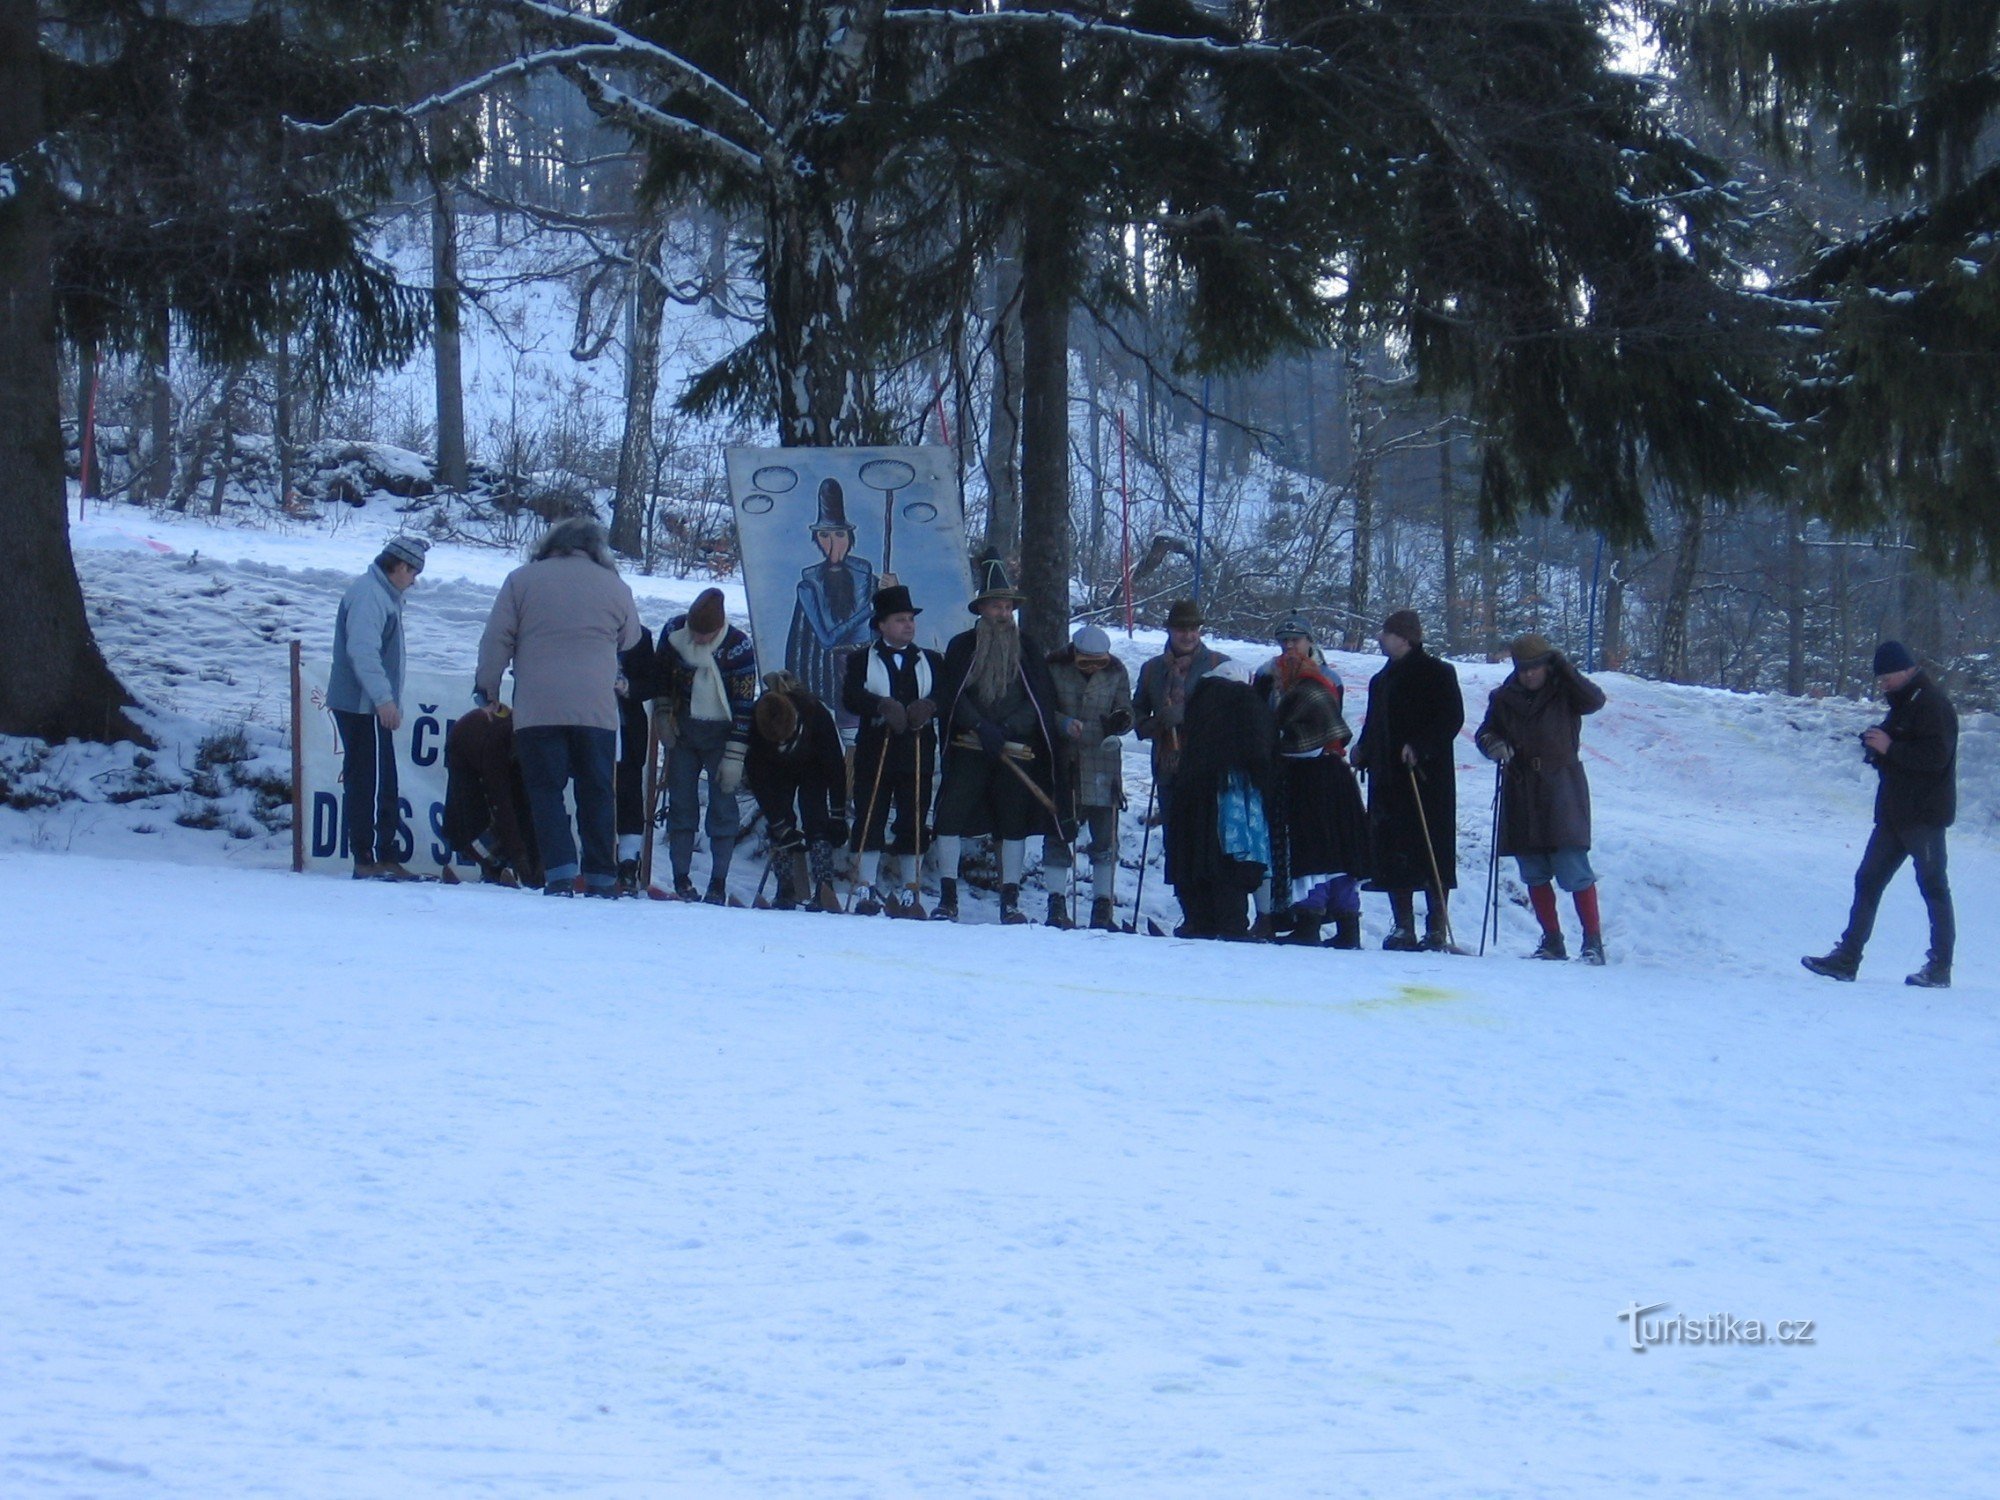 Carnival on skis - Veřovice - January 2012